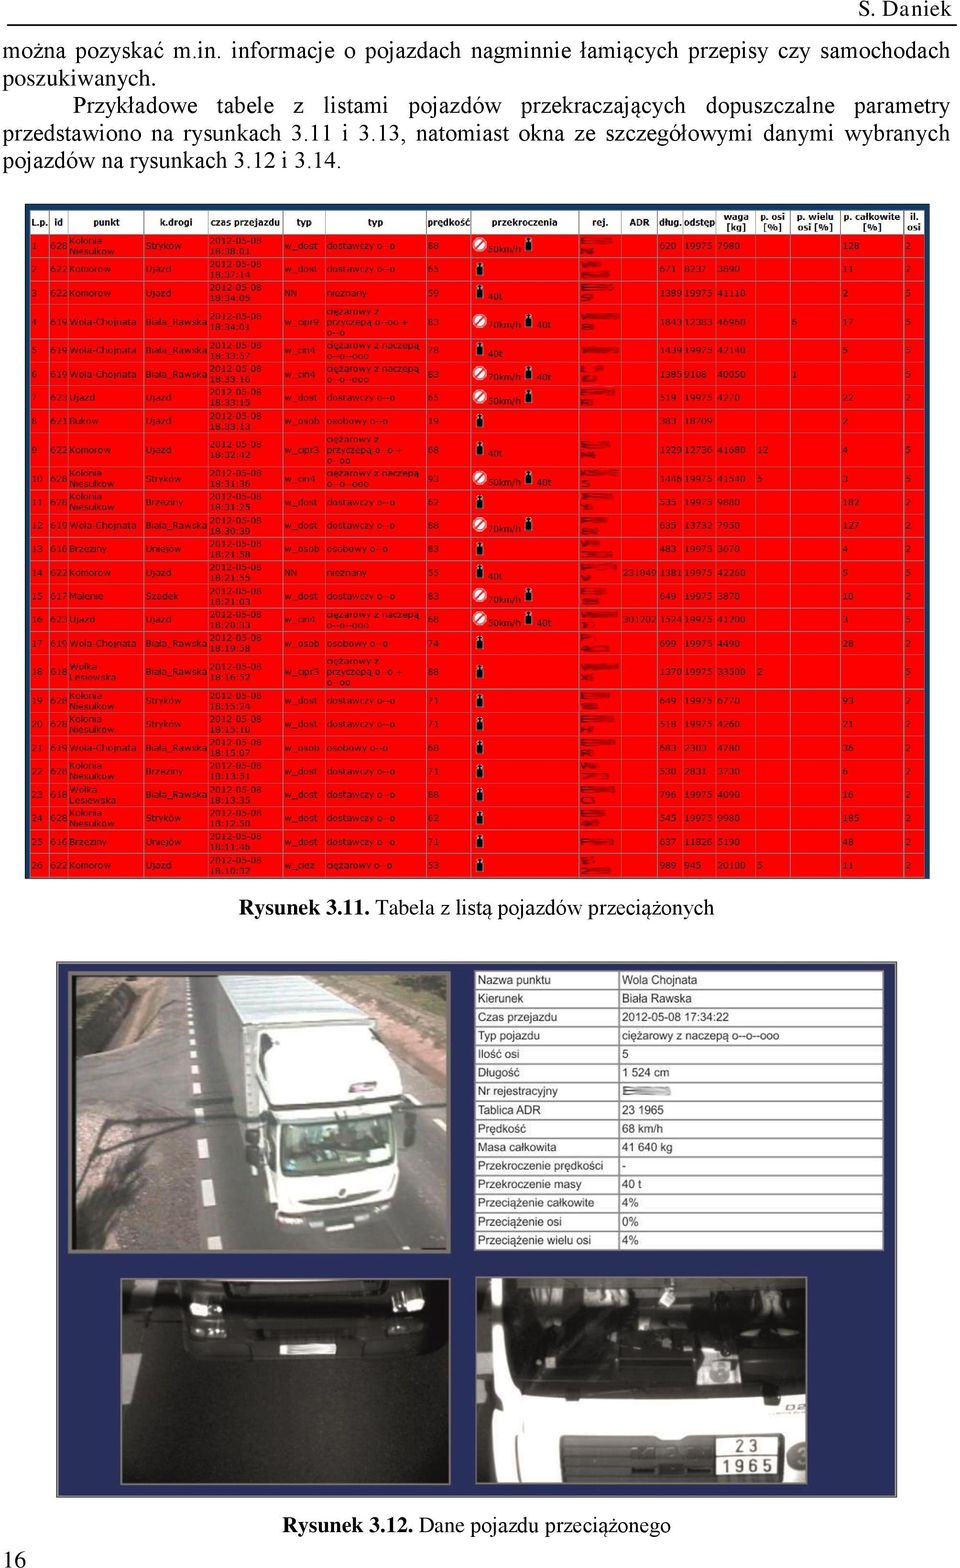 Przykładowe tabele z listami pojazdów przekraczających dopuszczalne parametry przedstawiono na